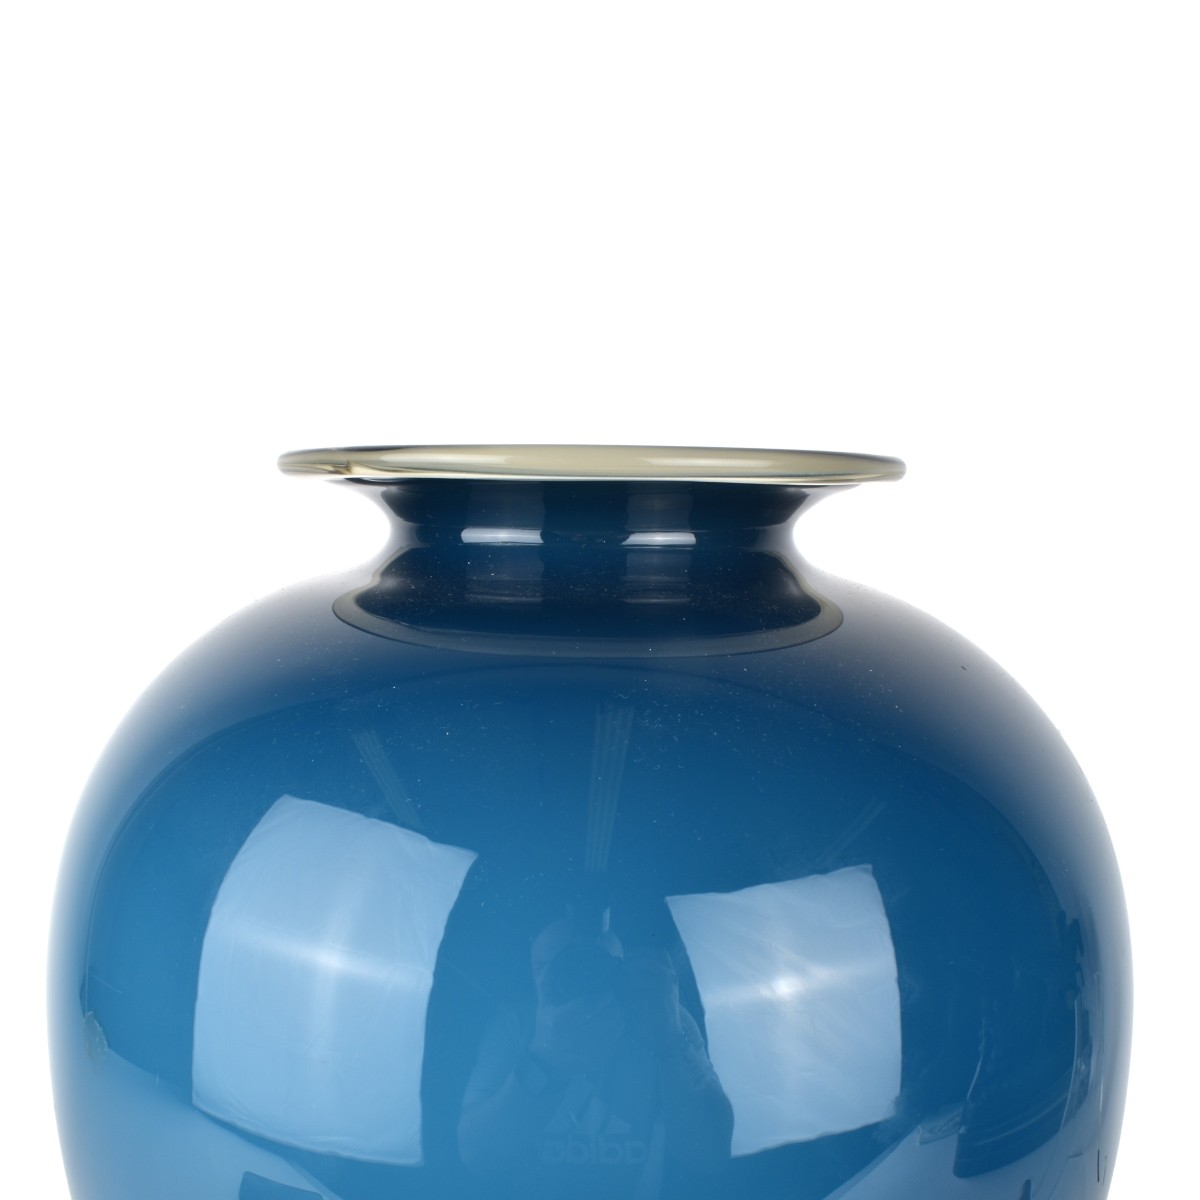 Large Vintage Art Glass Vase